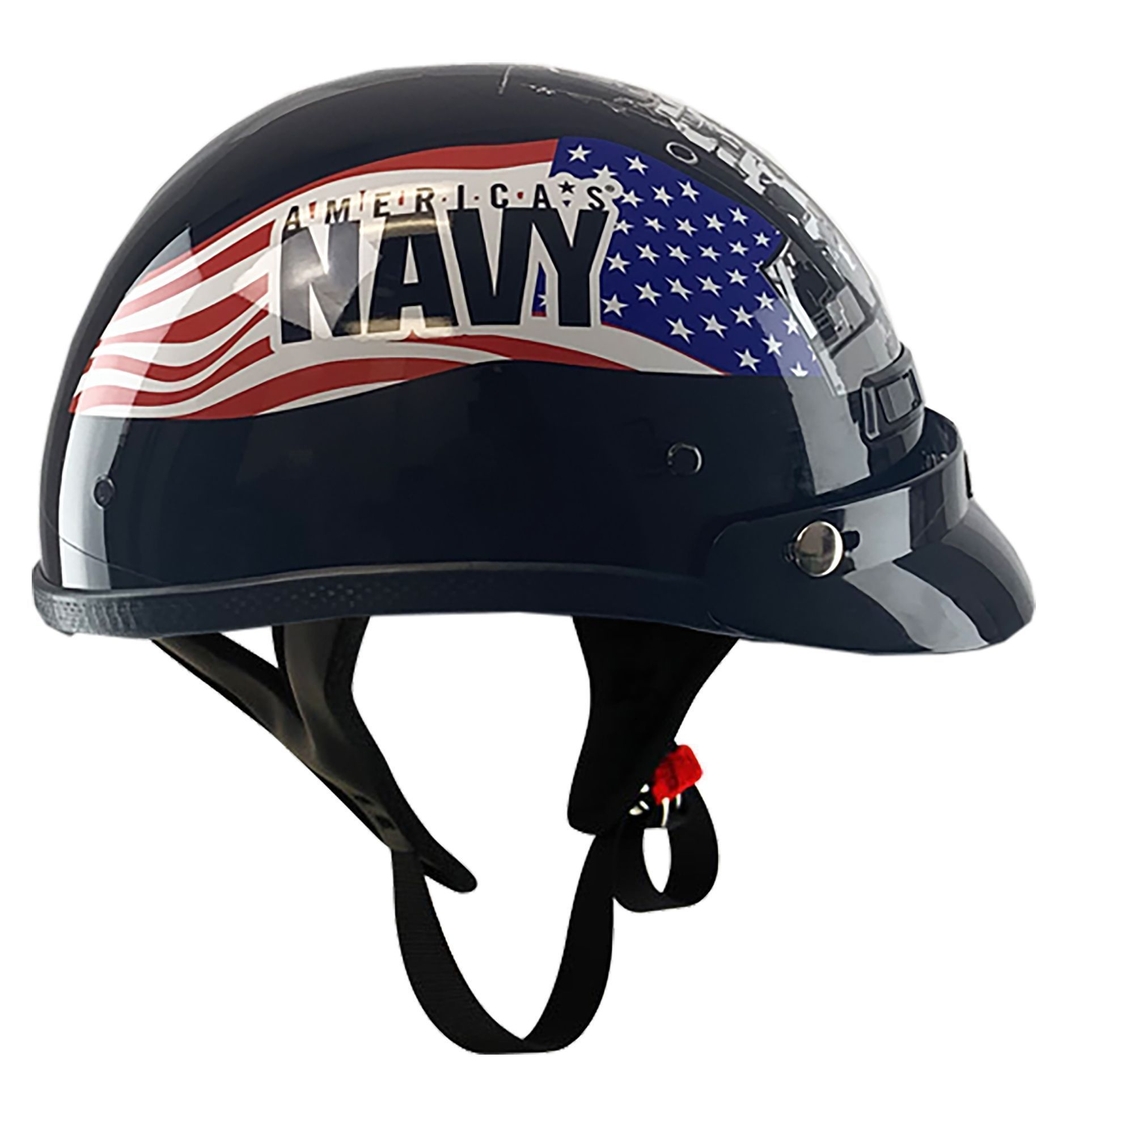 US Navy Motorcycle Helmet - Image 2 of 2